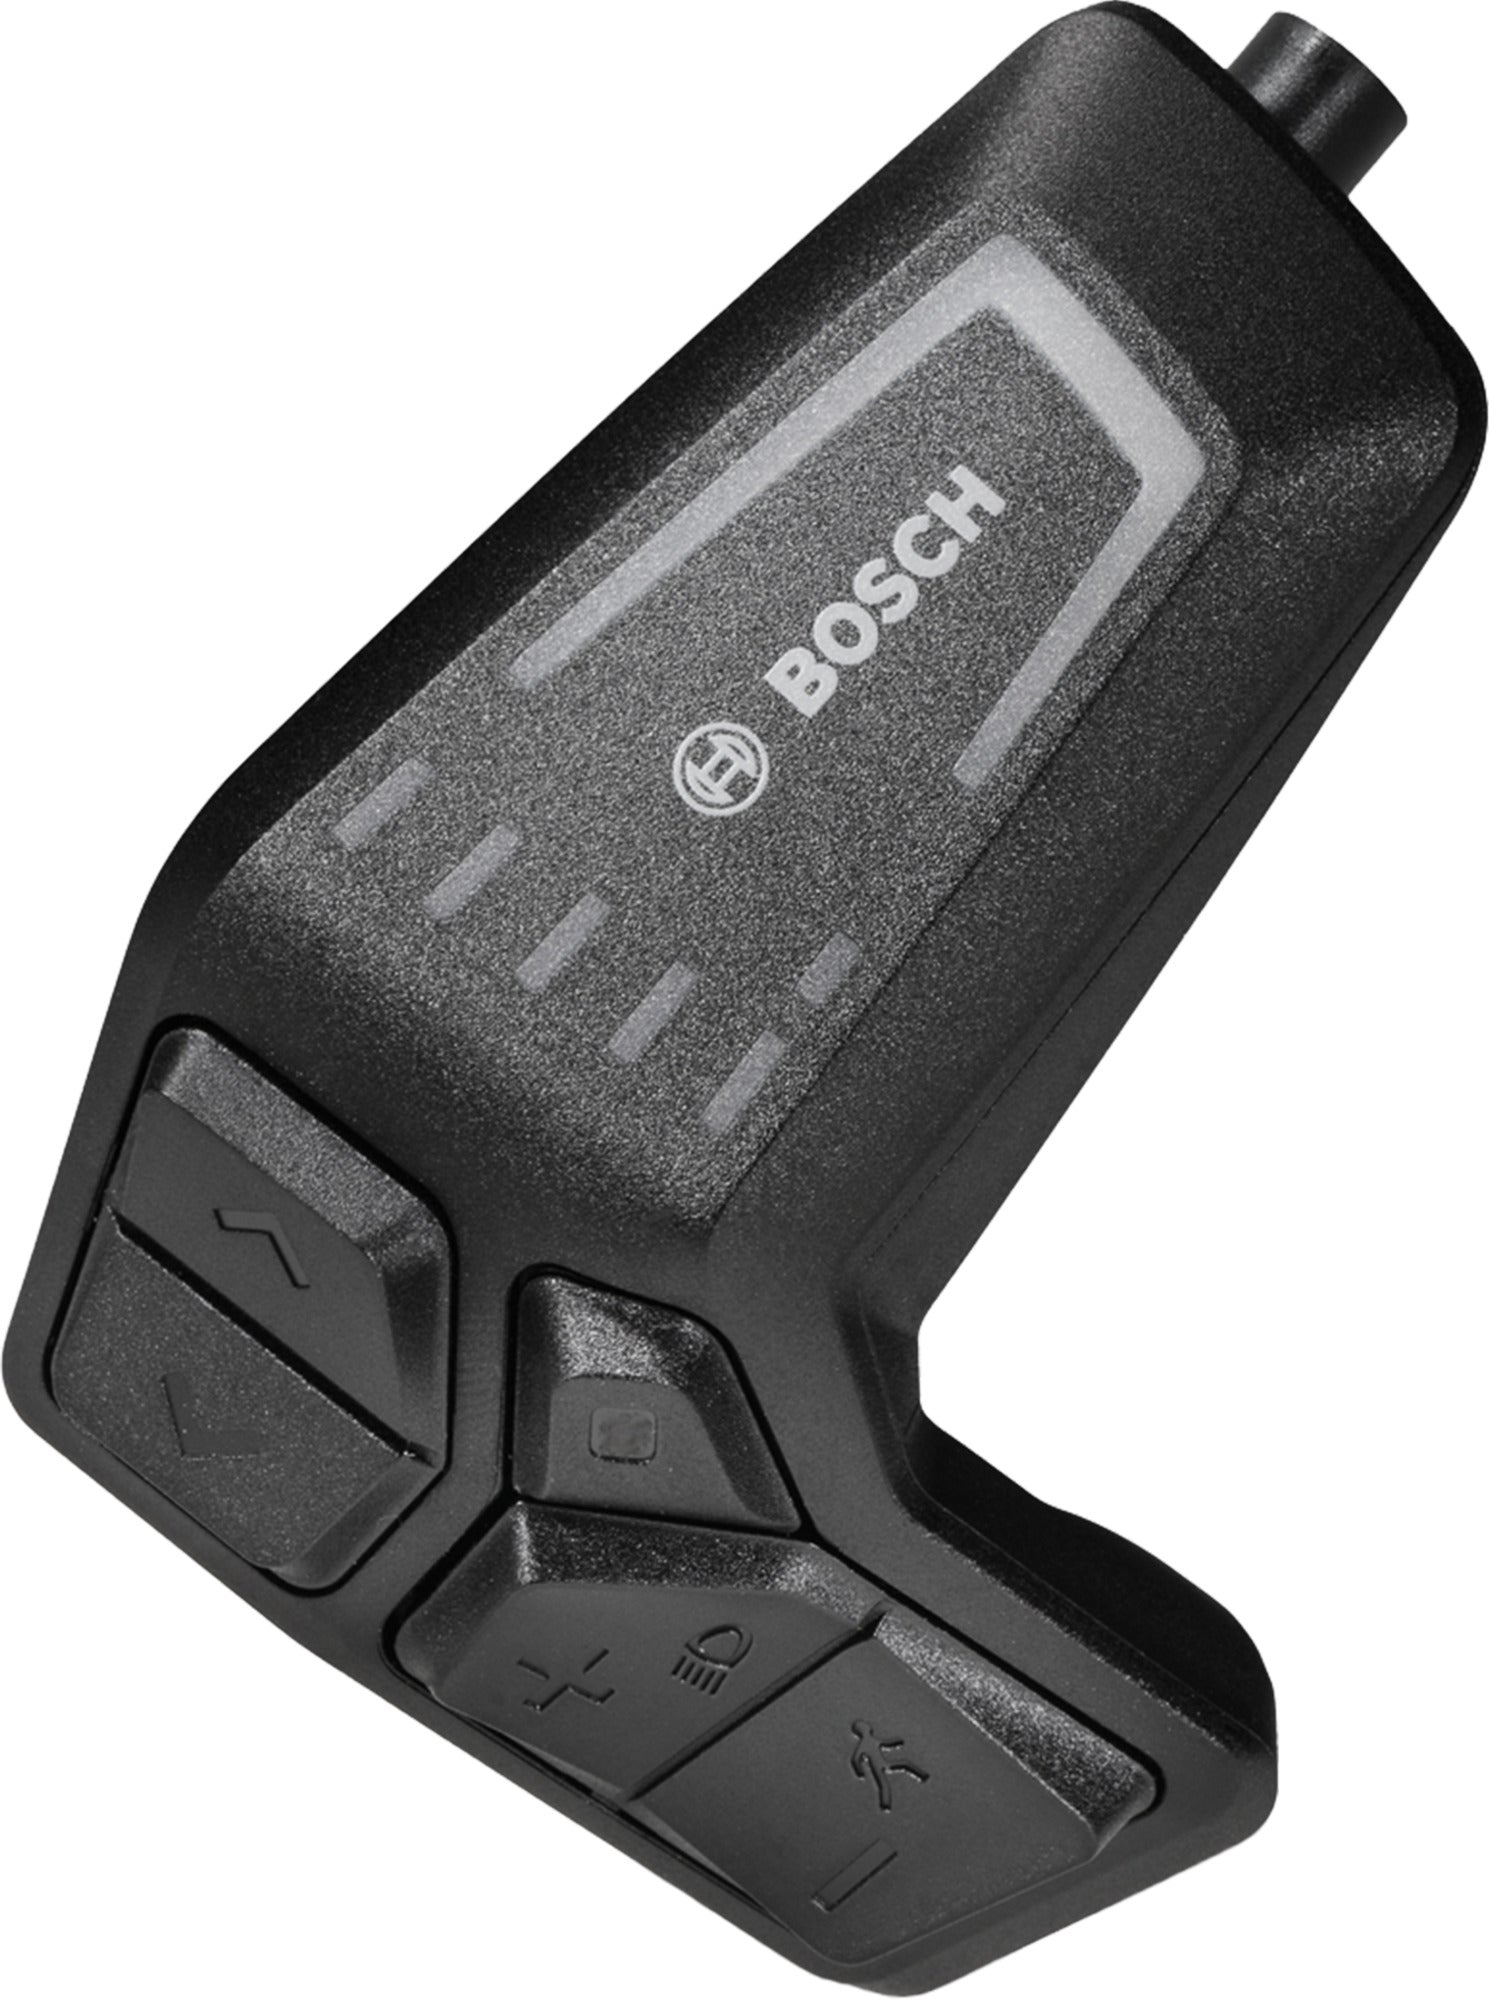 Led Remote (Brc3600) - Smart System